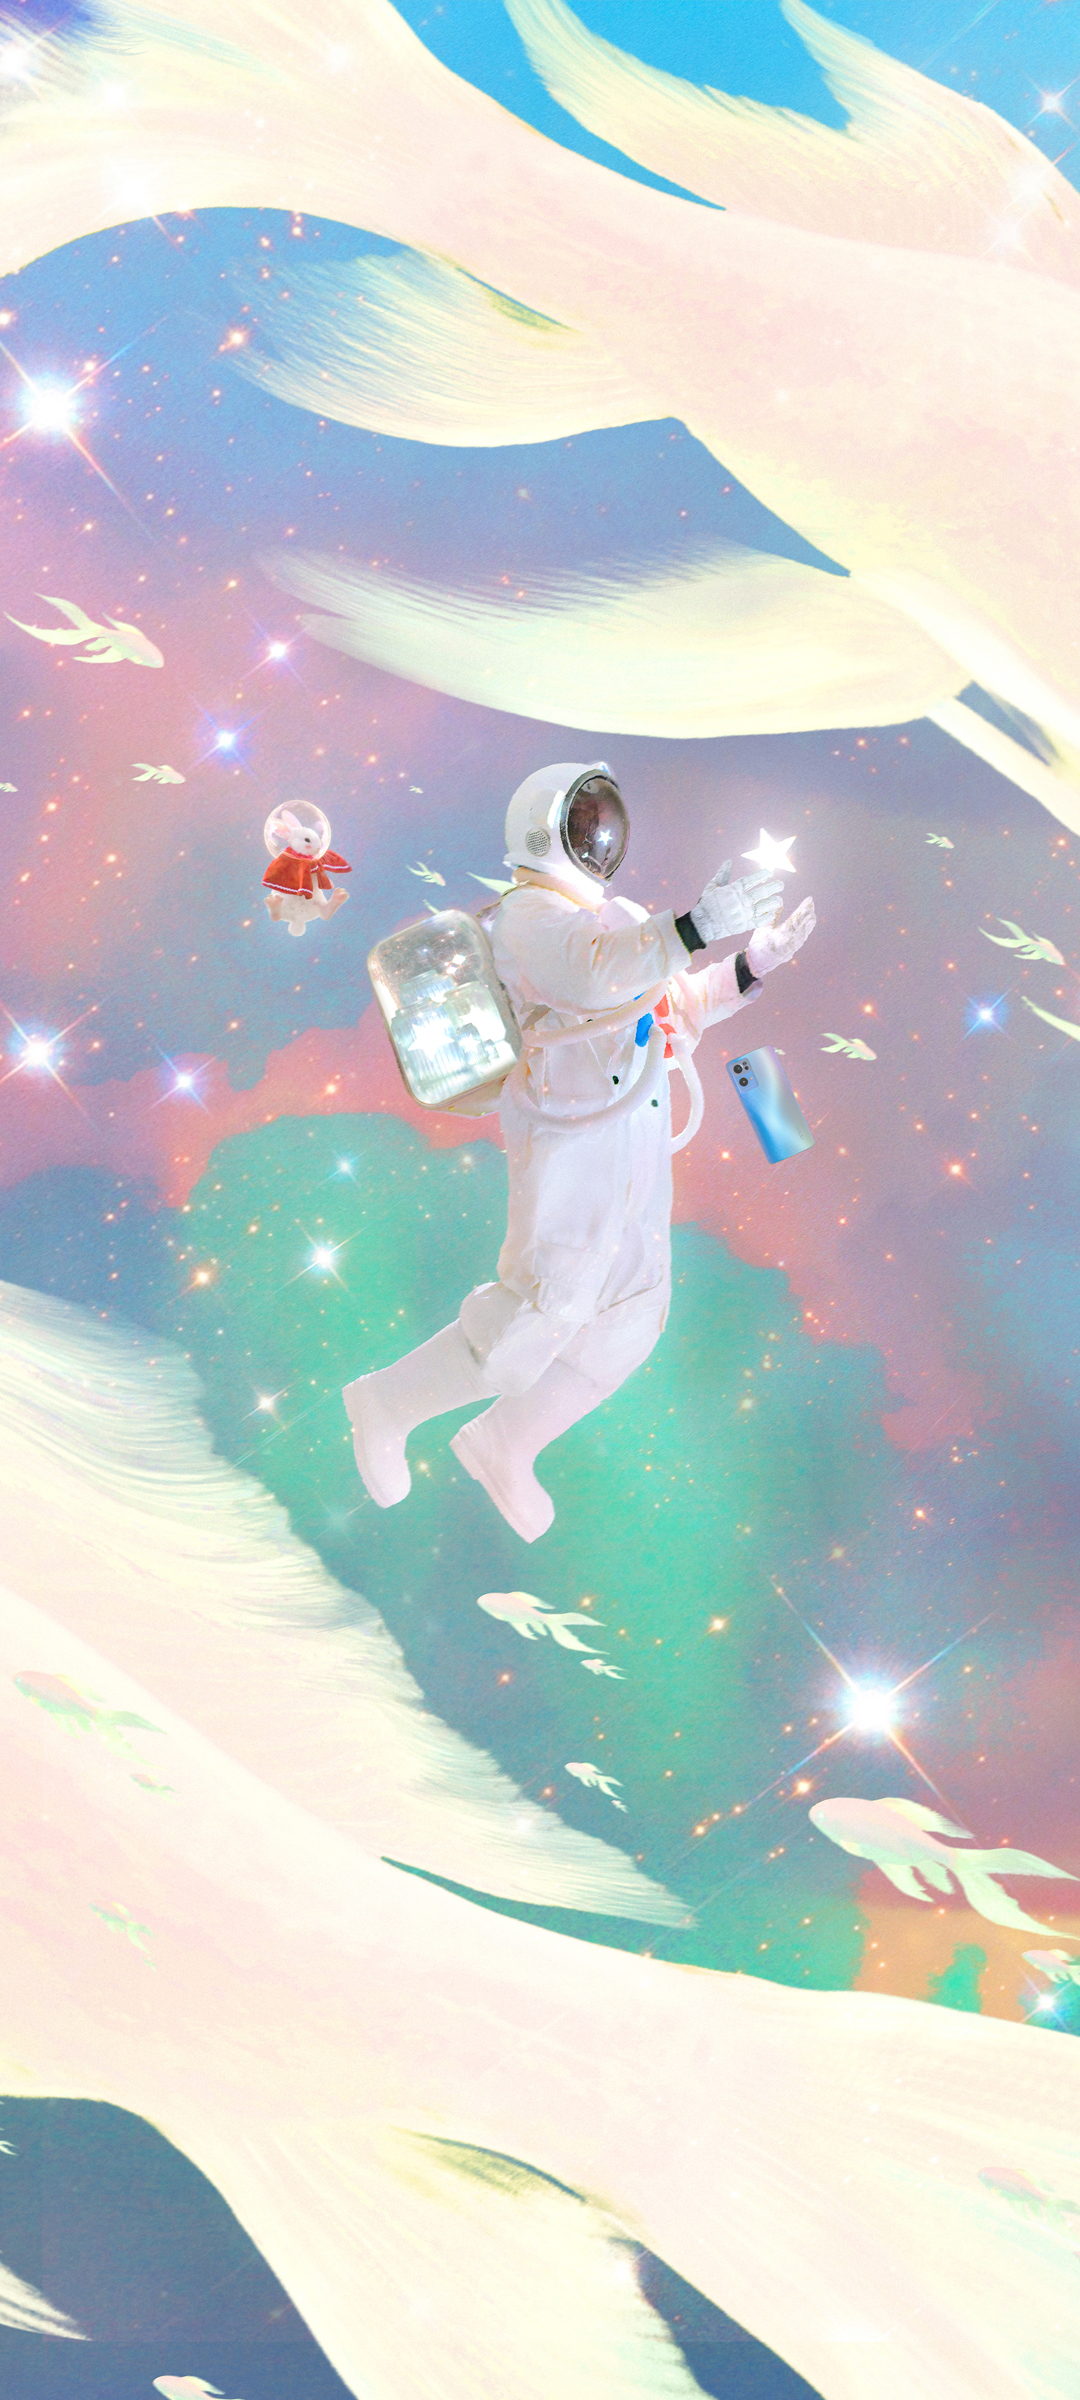 兔兔梦境寻星之旅 宇航员 创意唯美意境手机壁纸